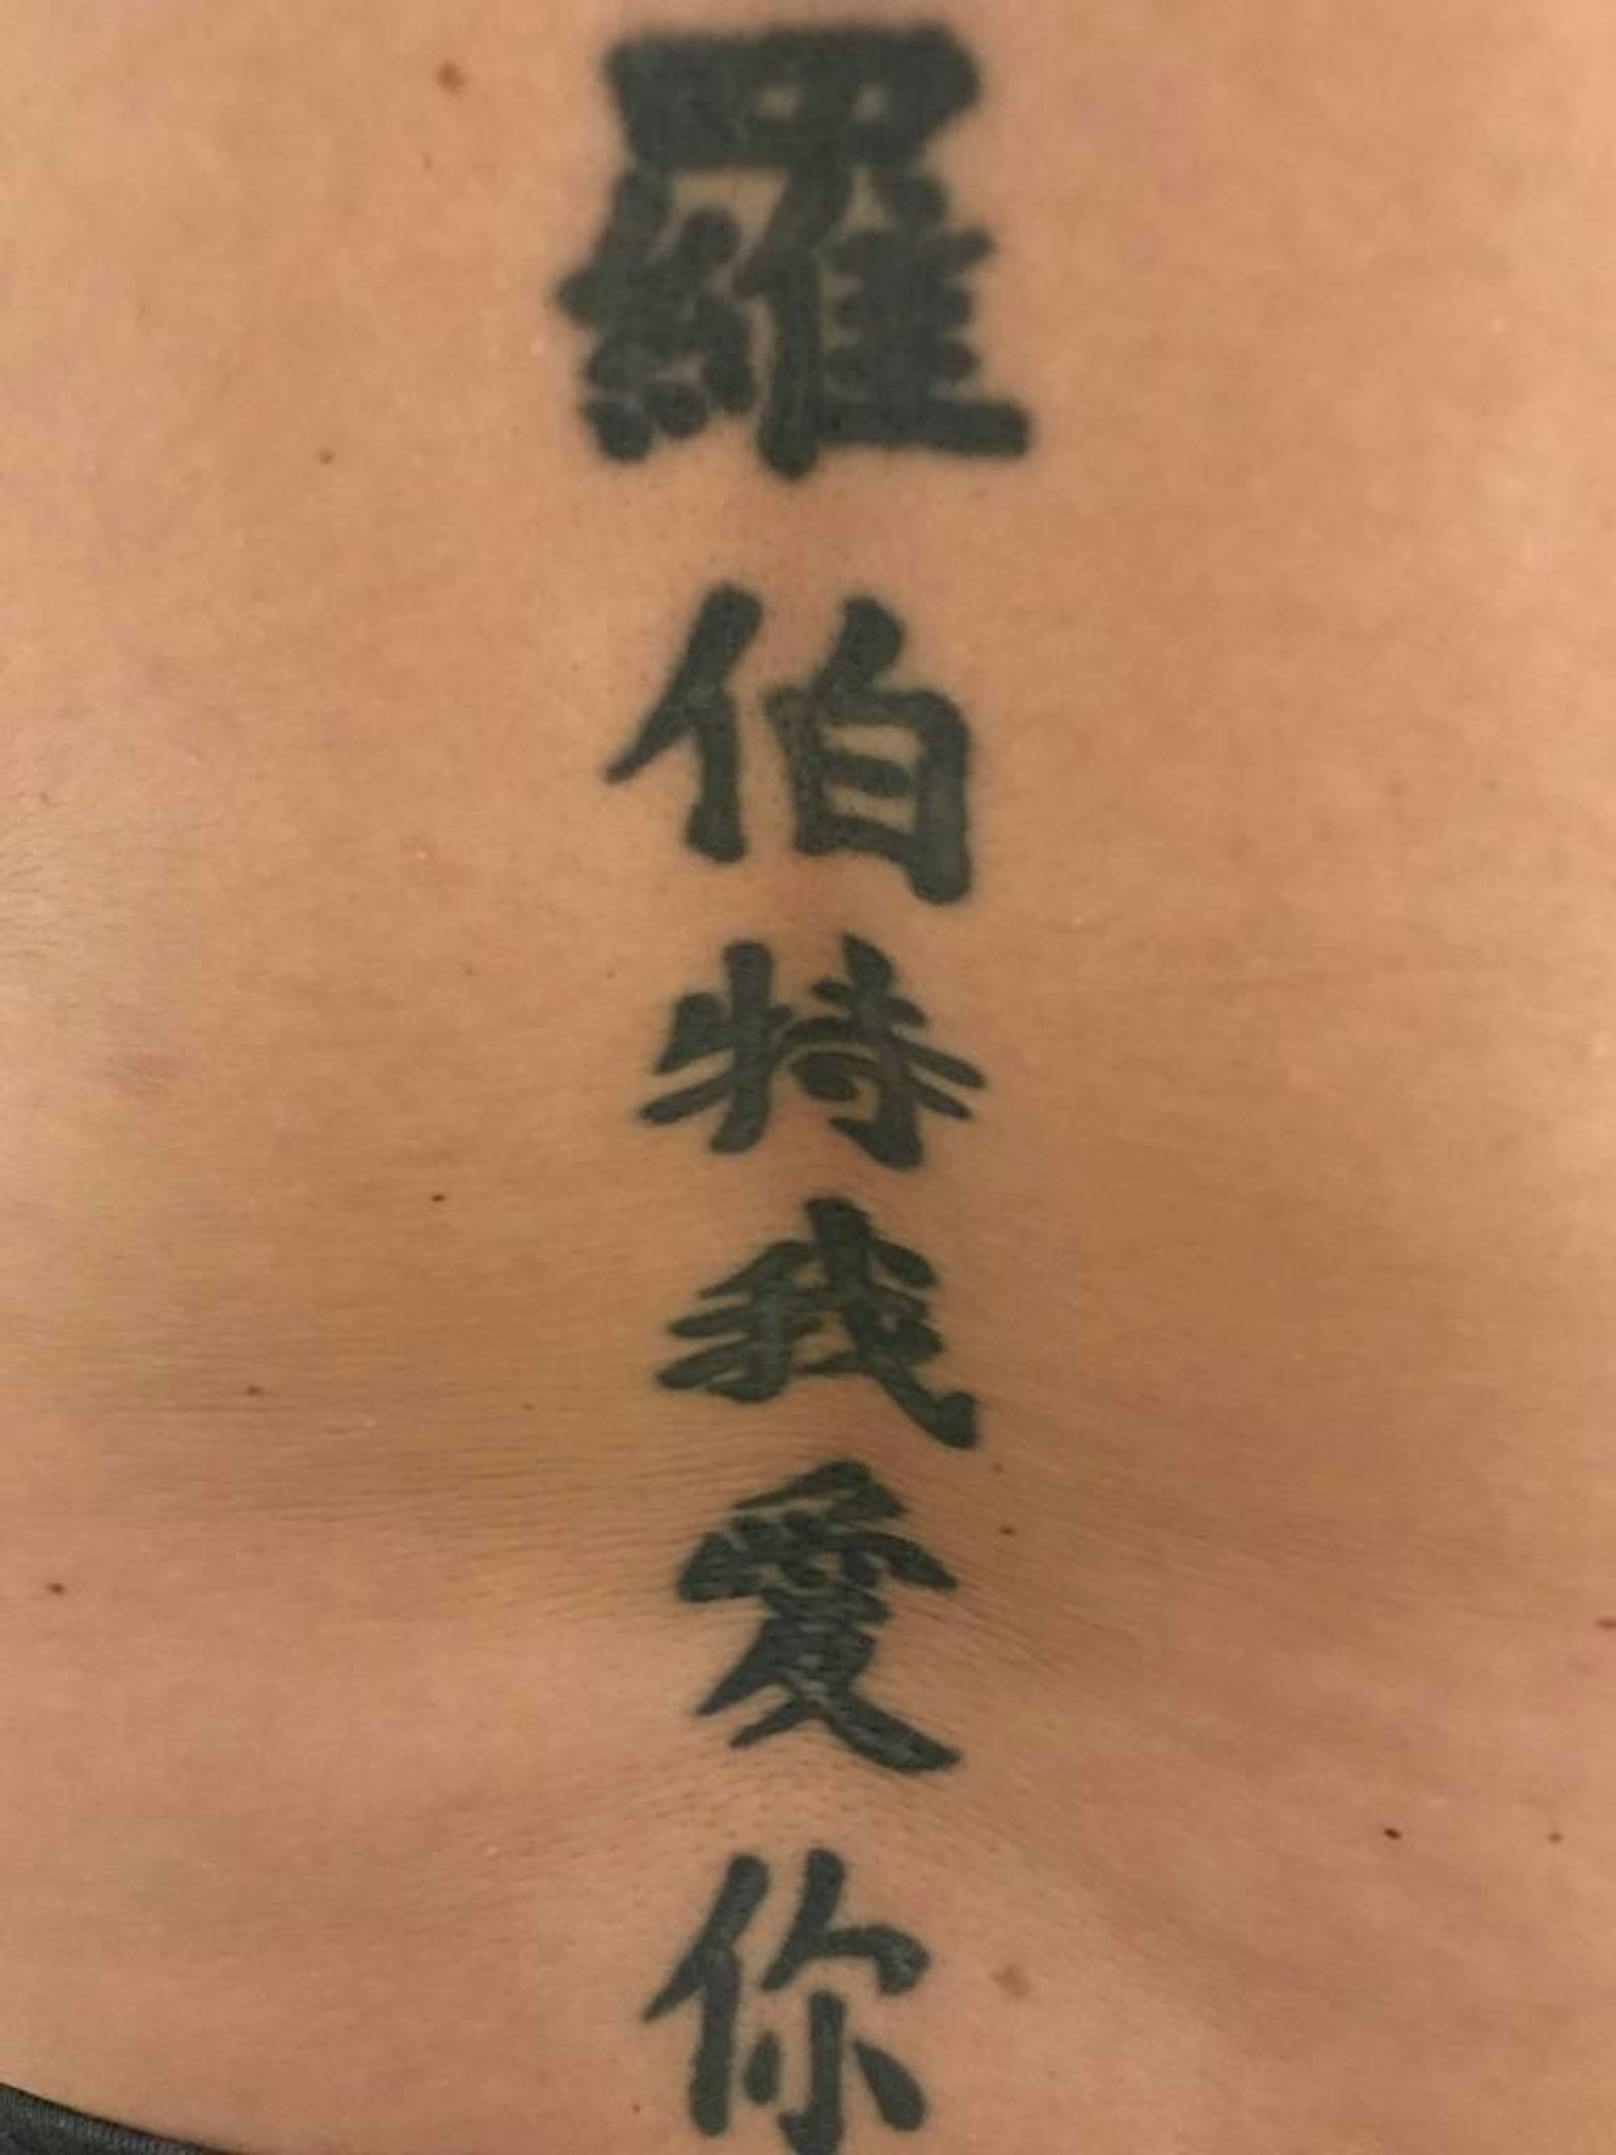 "Habe meinem Ex mit diesen chinesischen Schriftzeichen eine Liebeserklärung gemacht. Nicht nur, dass der damalige Tätowierer anscheinend zu tief gestochen hat (das Tattoo ist stellenweise vernarbt), bin ich mir über die Bedeutung nicht wirklich sicher. Egal - es muss auf jeden Fall weg, da mein jetziger Partner (verständlicherweise) auch nicht grad glücklich darüber ist".